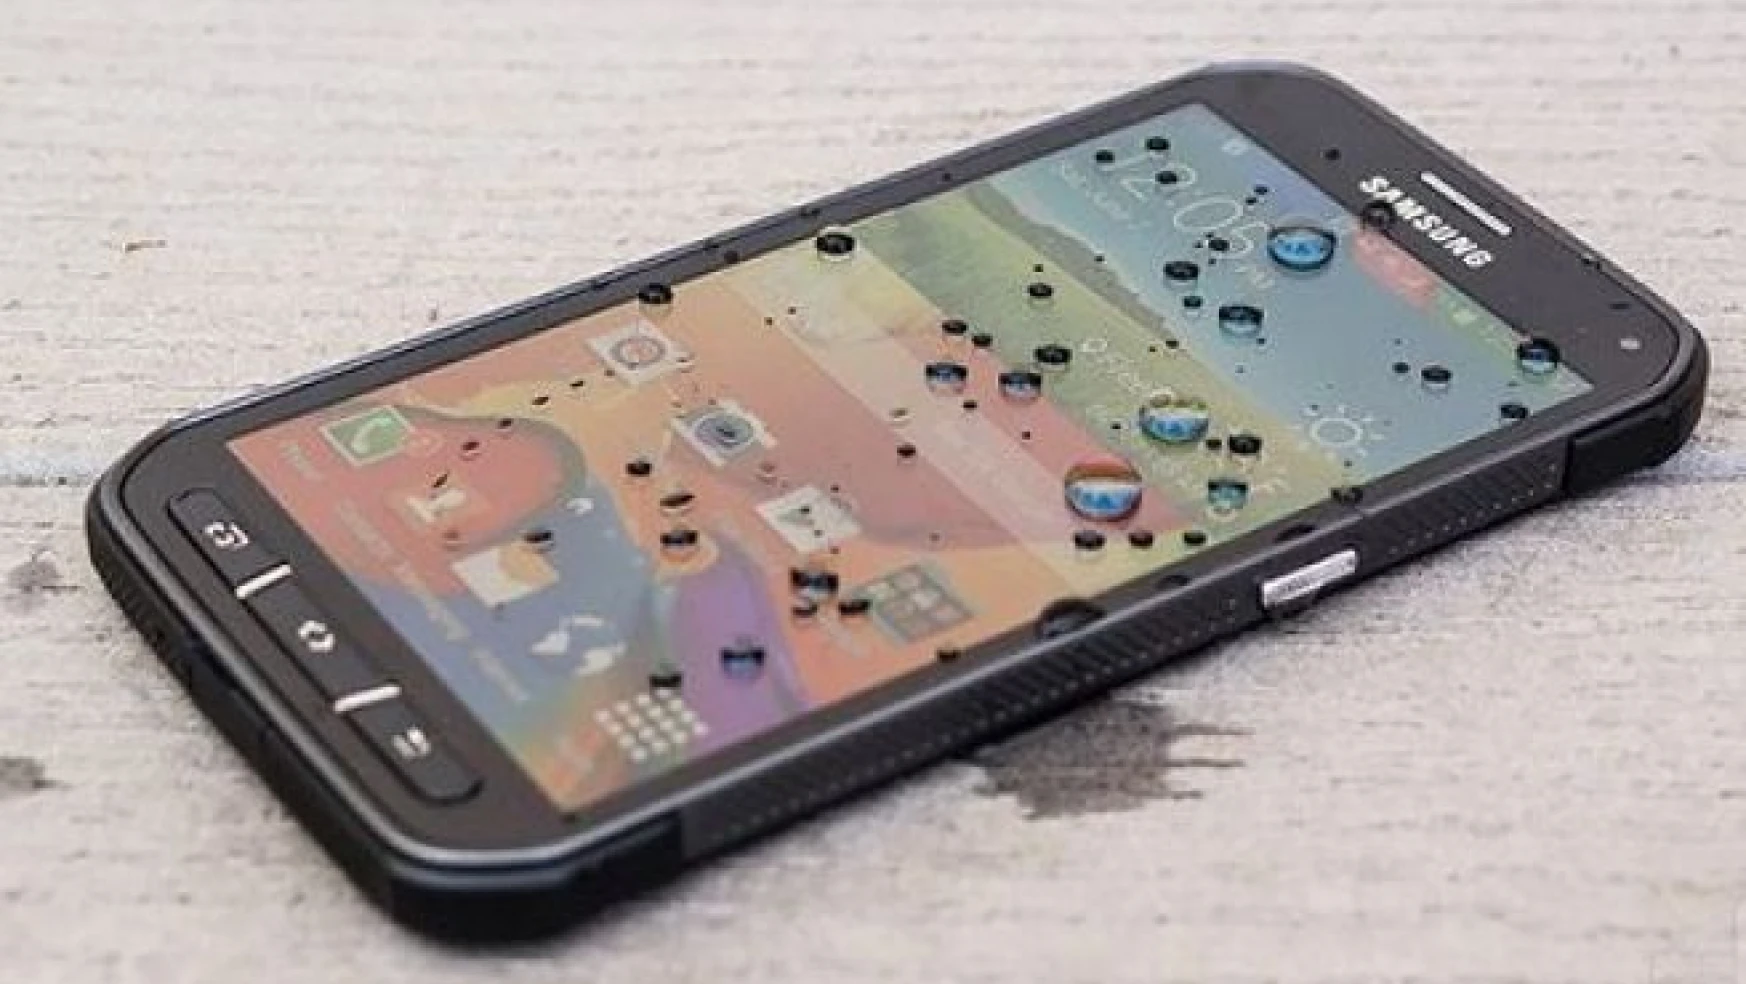 Samsung Galaxy S6 Active tencerede kaynatıldı! Peki ya sonuç? (Video)